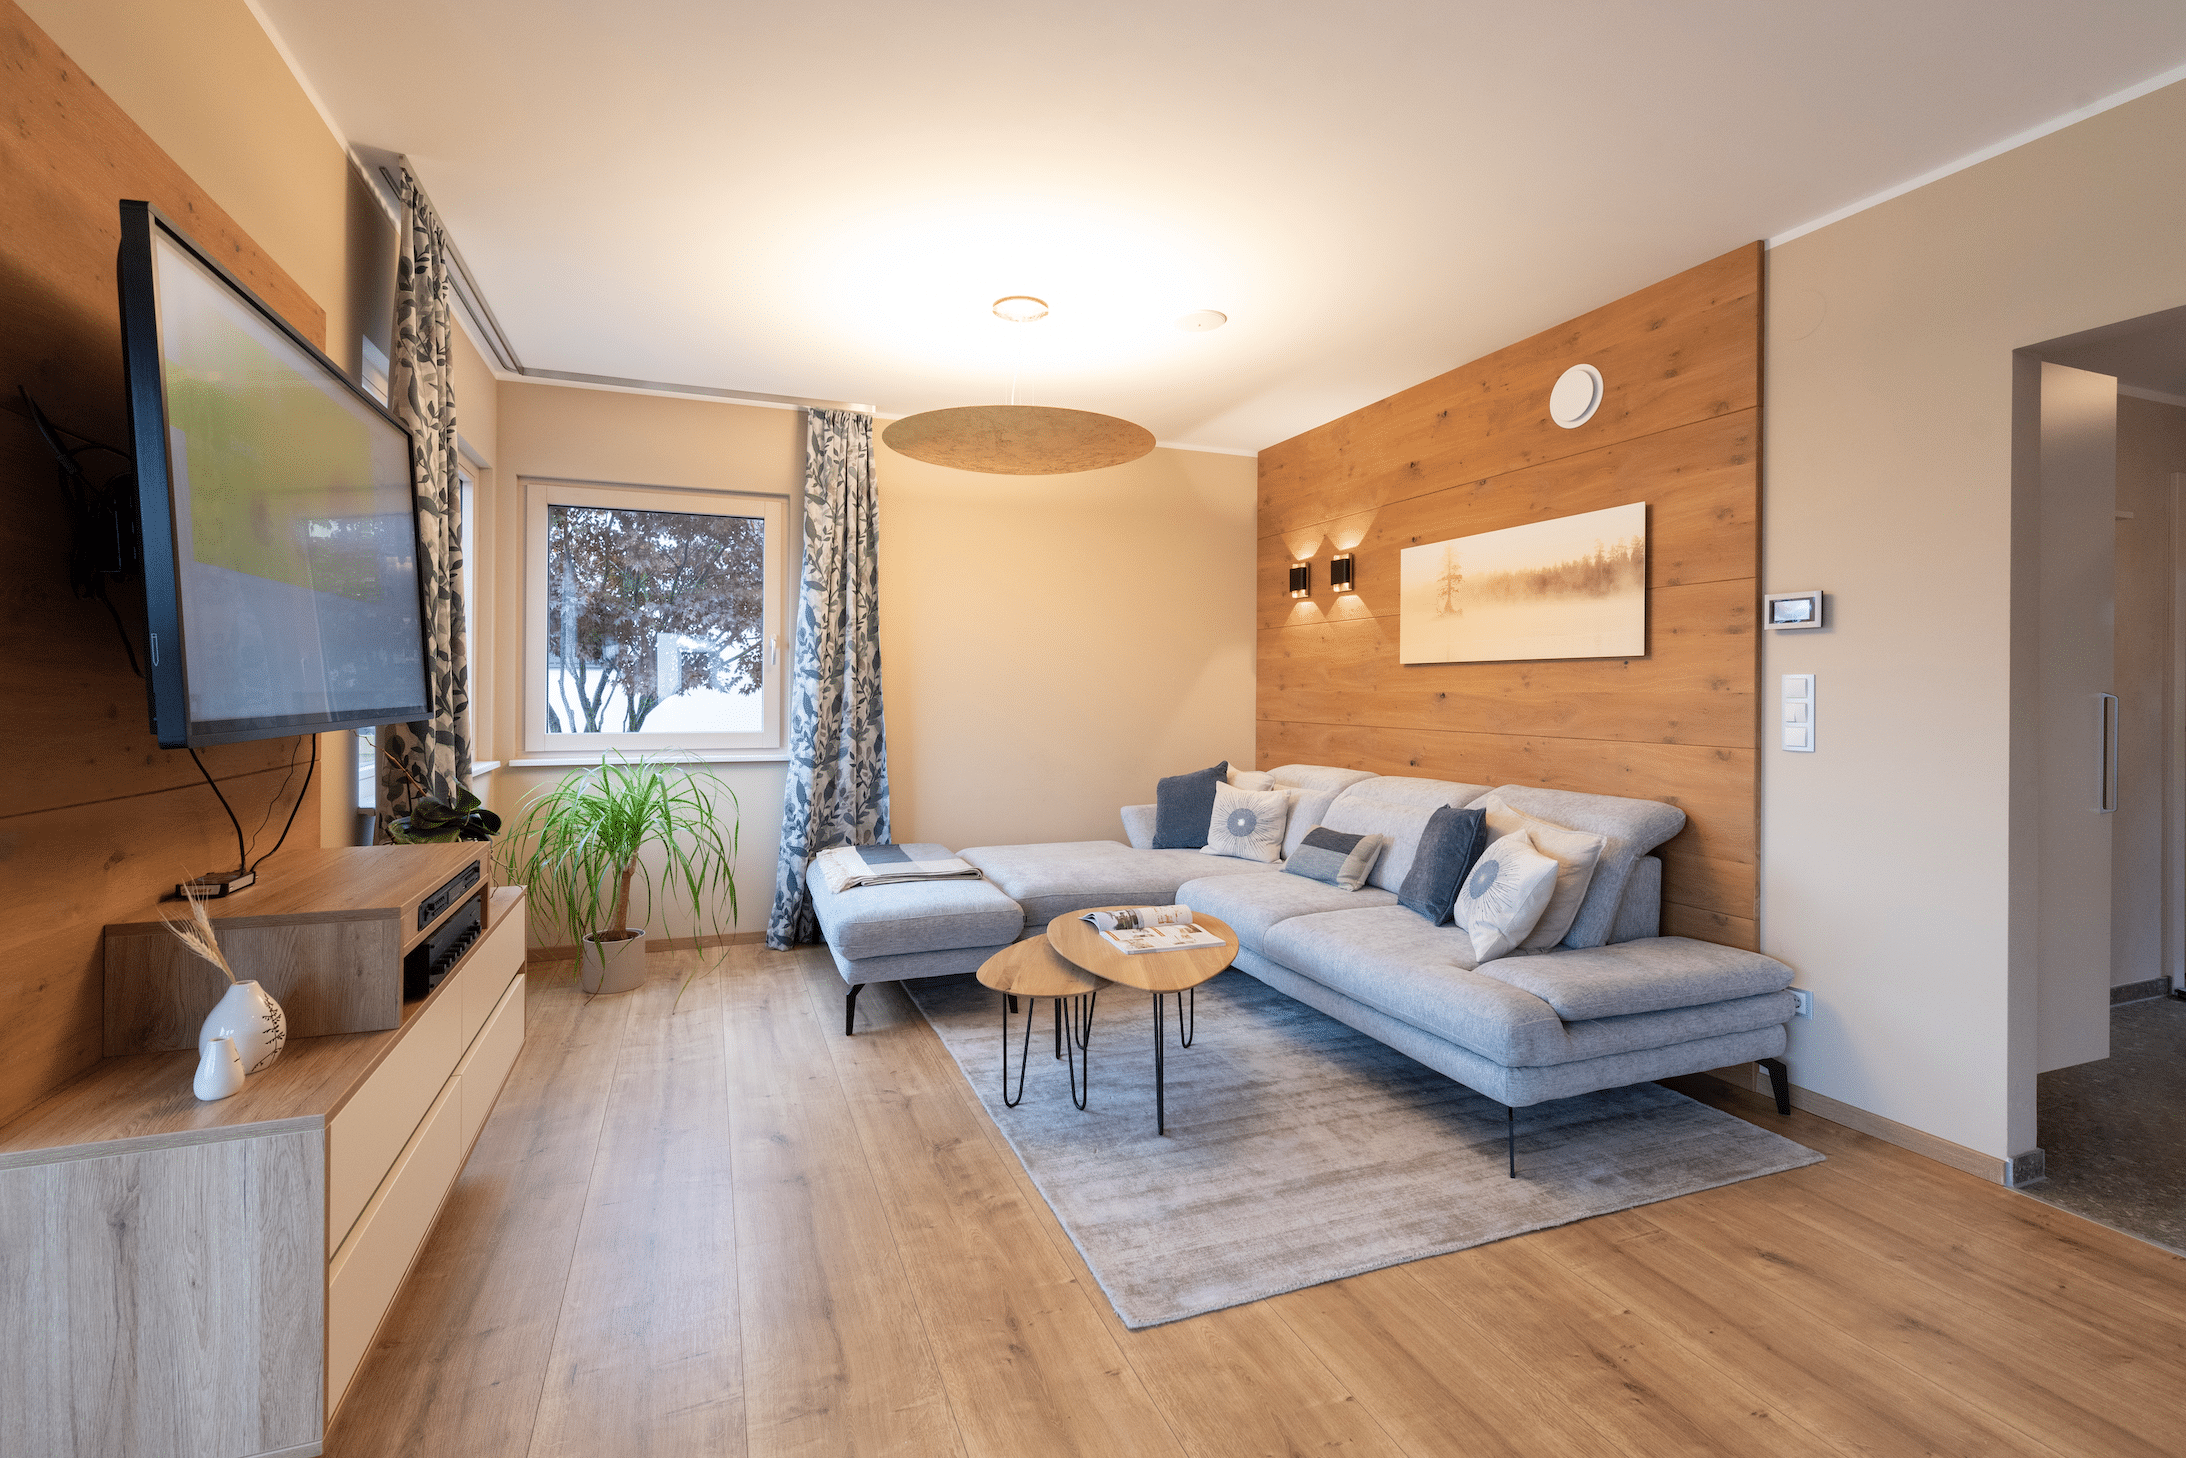 Hartl Haus zeigt ein Wohnzimmer mit Holz verbaut, hellgrauer Couch, einem Couchtisch, gemusterten Vorhängen und einem an der Wand hängenden Fernseher.